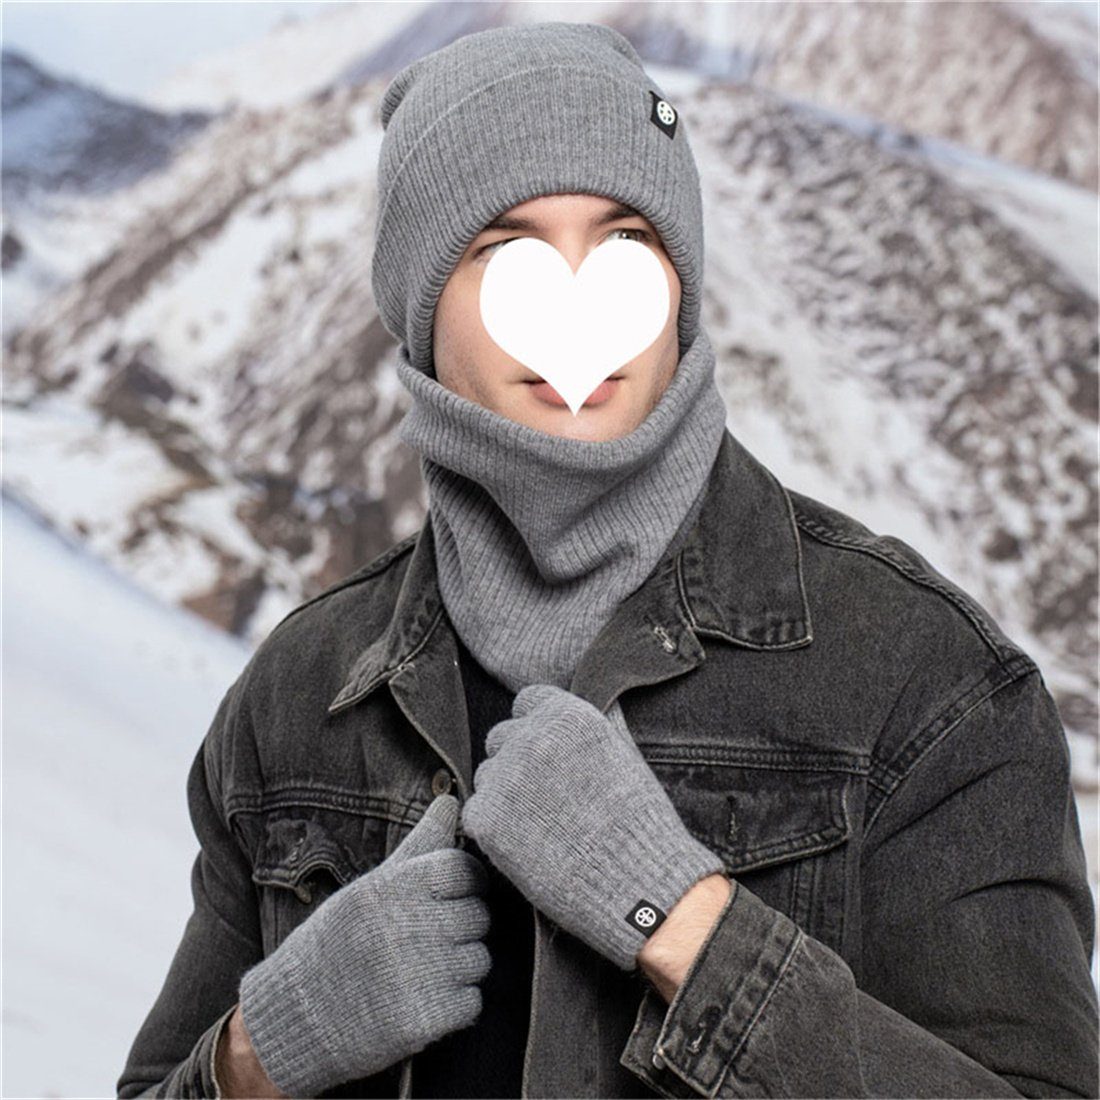 Piece Strickmütze DÖRÖY Winter Unisex Schal 3 Warmth khaki Strickmütze + + Handschuhe Set,